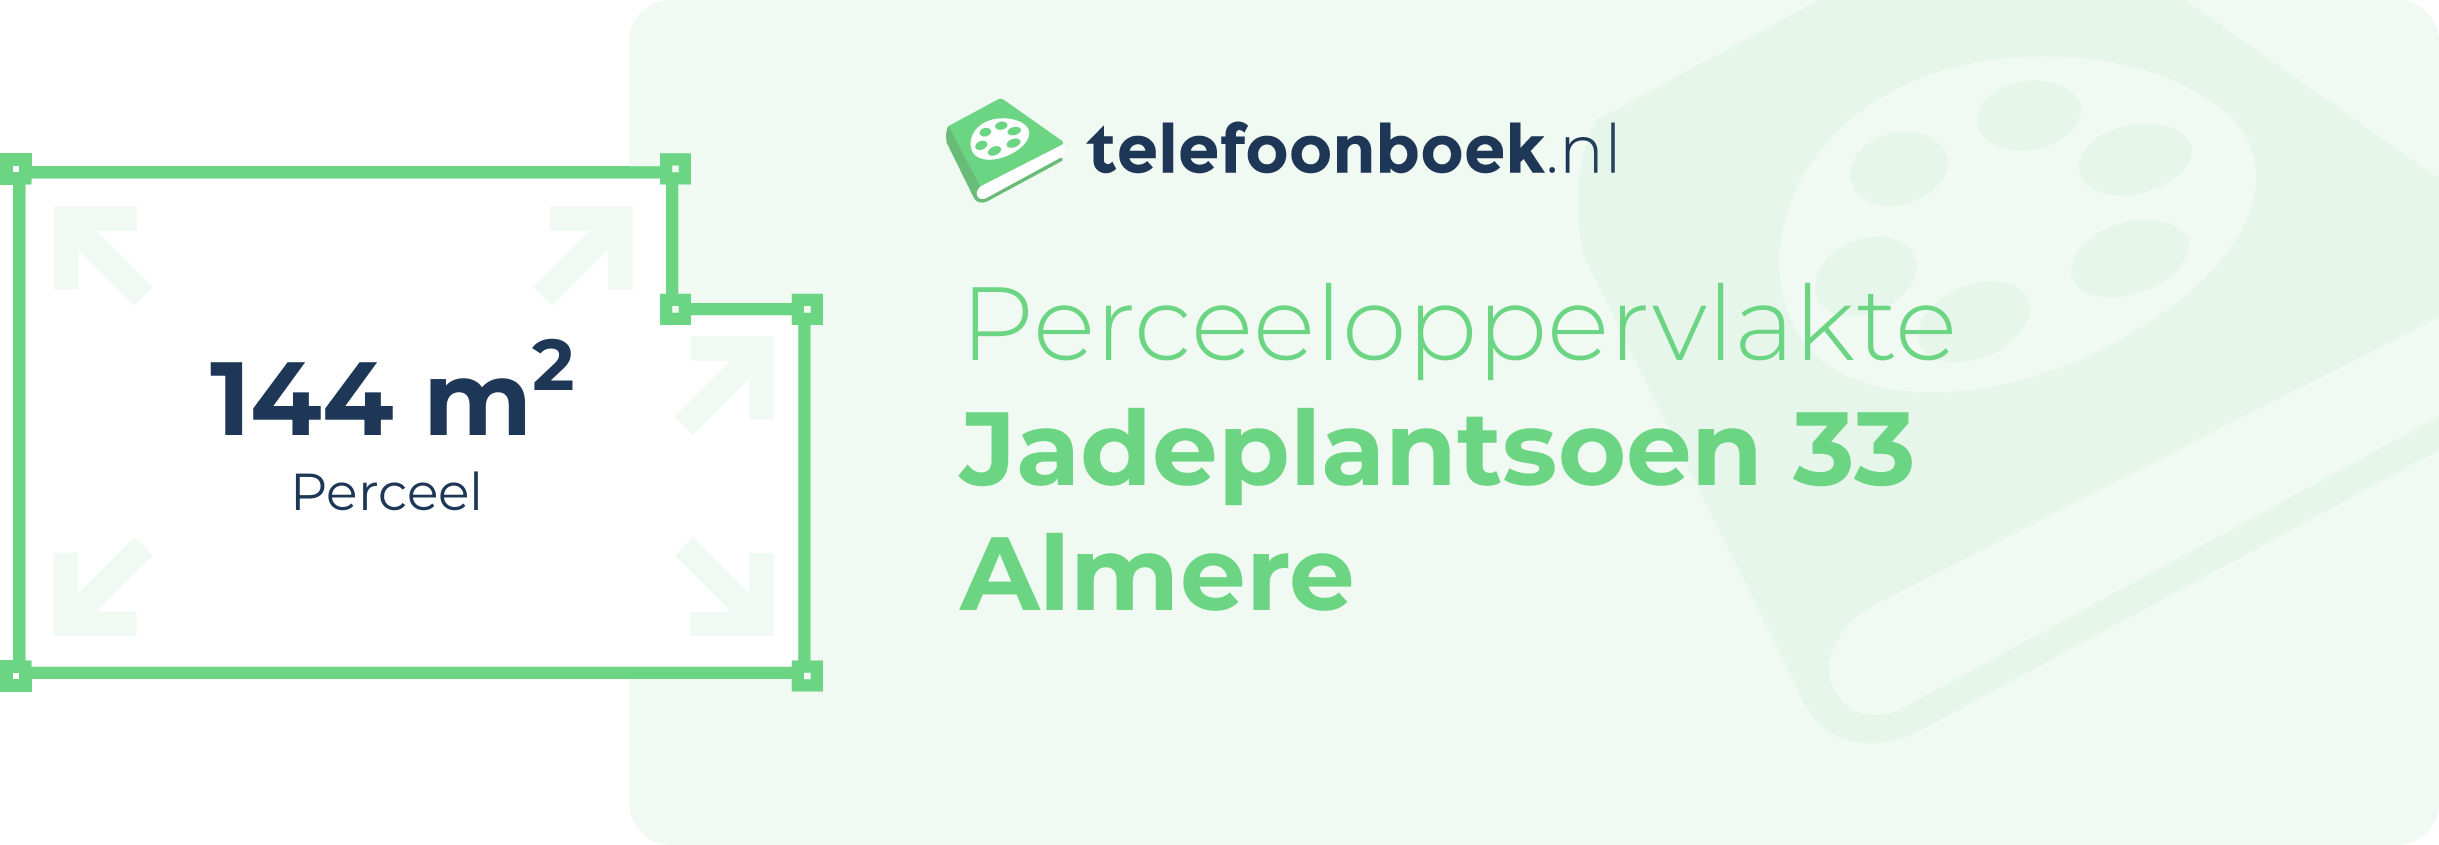 Perceeloppervlakte Jadeplantsoen 33 Almere